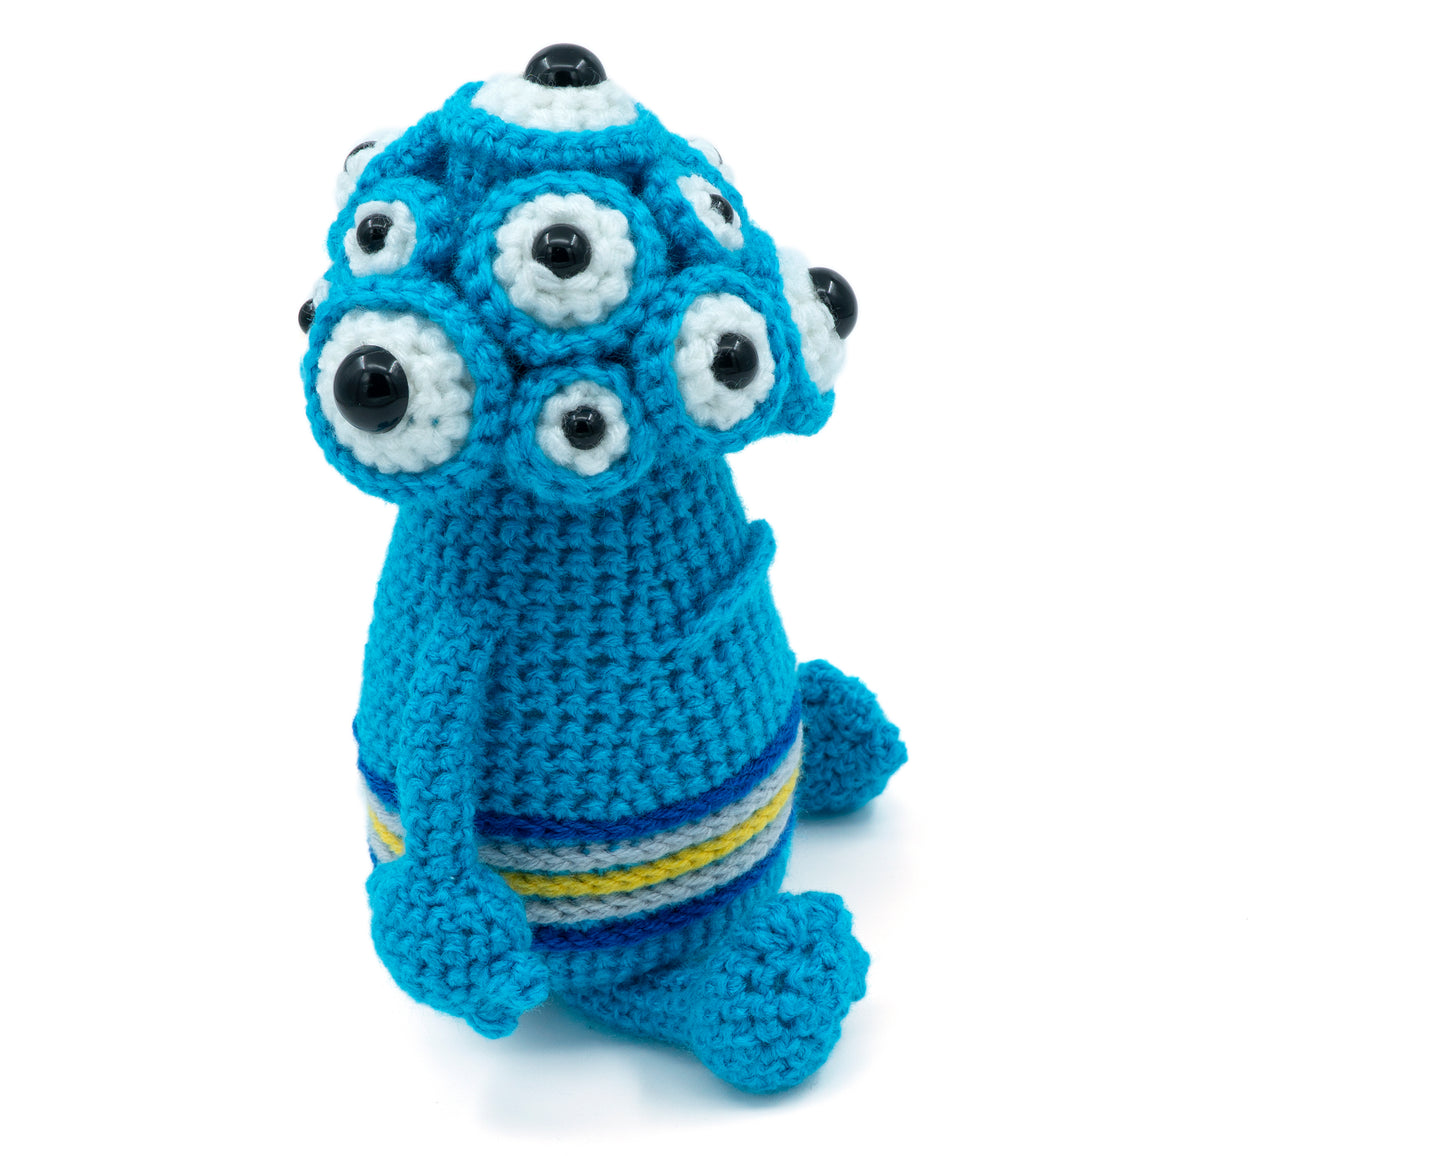 Crochet Pattern: Horace the Monster